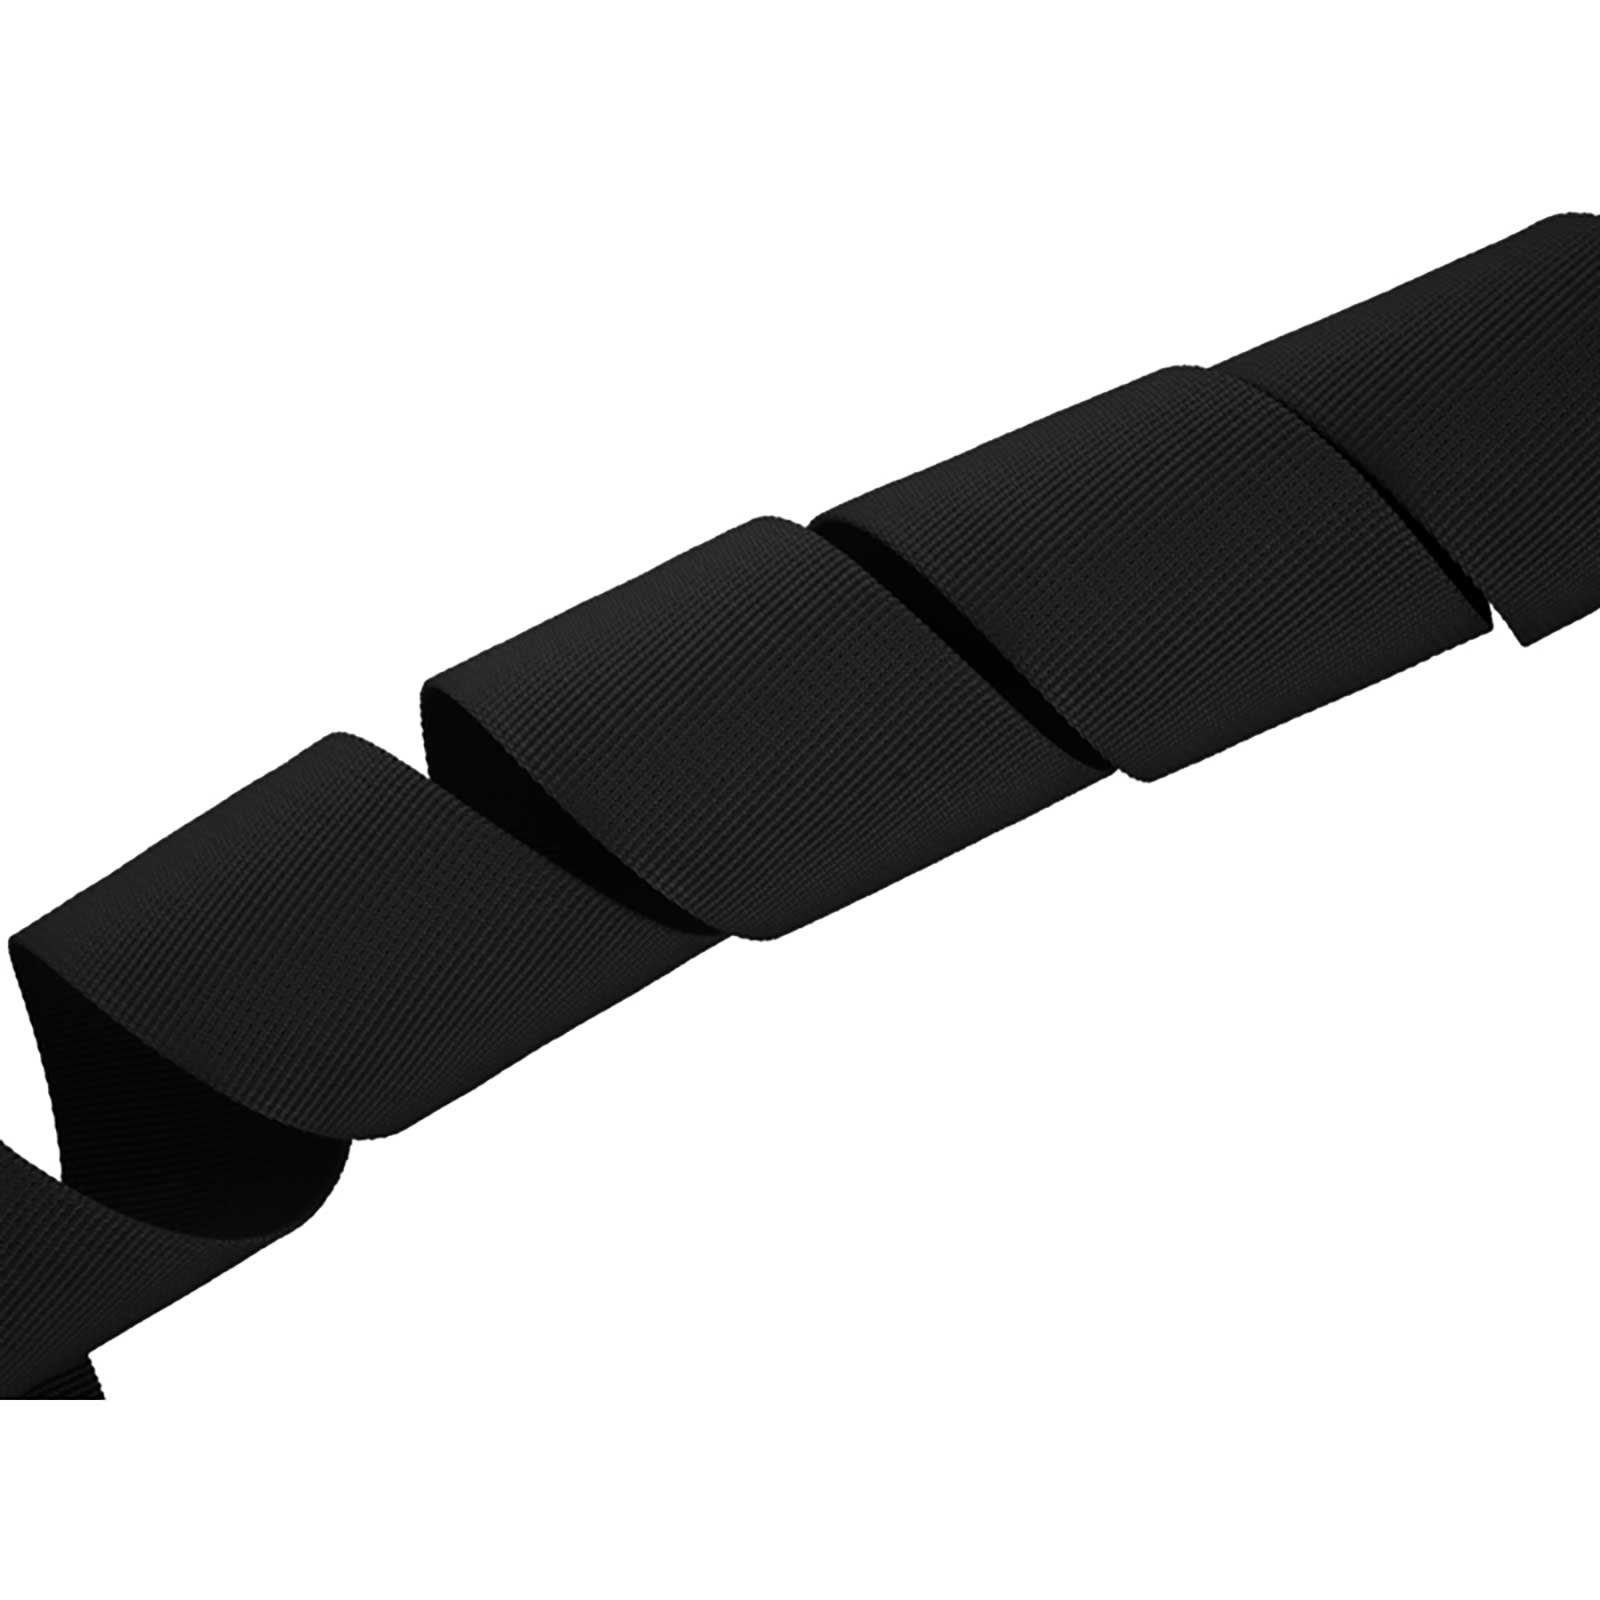 maDDma Gurtband Polyester 10m lang 50mm breit Farbwahl Rollladengurt, 580 schwarz | Rollladen-Ersatzteile